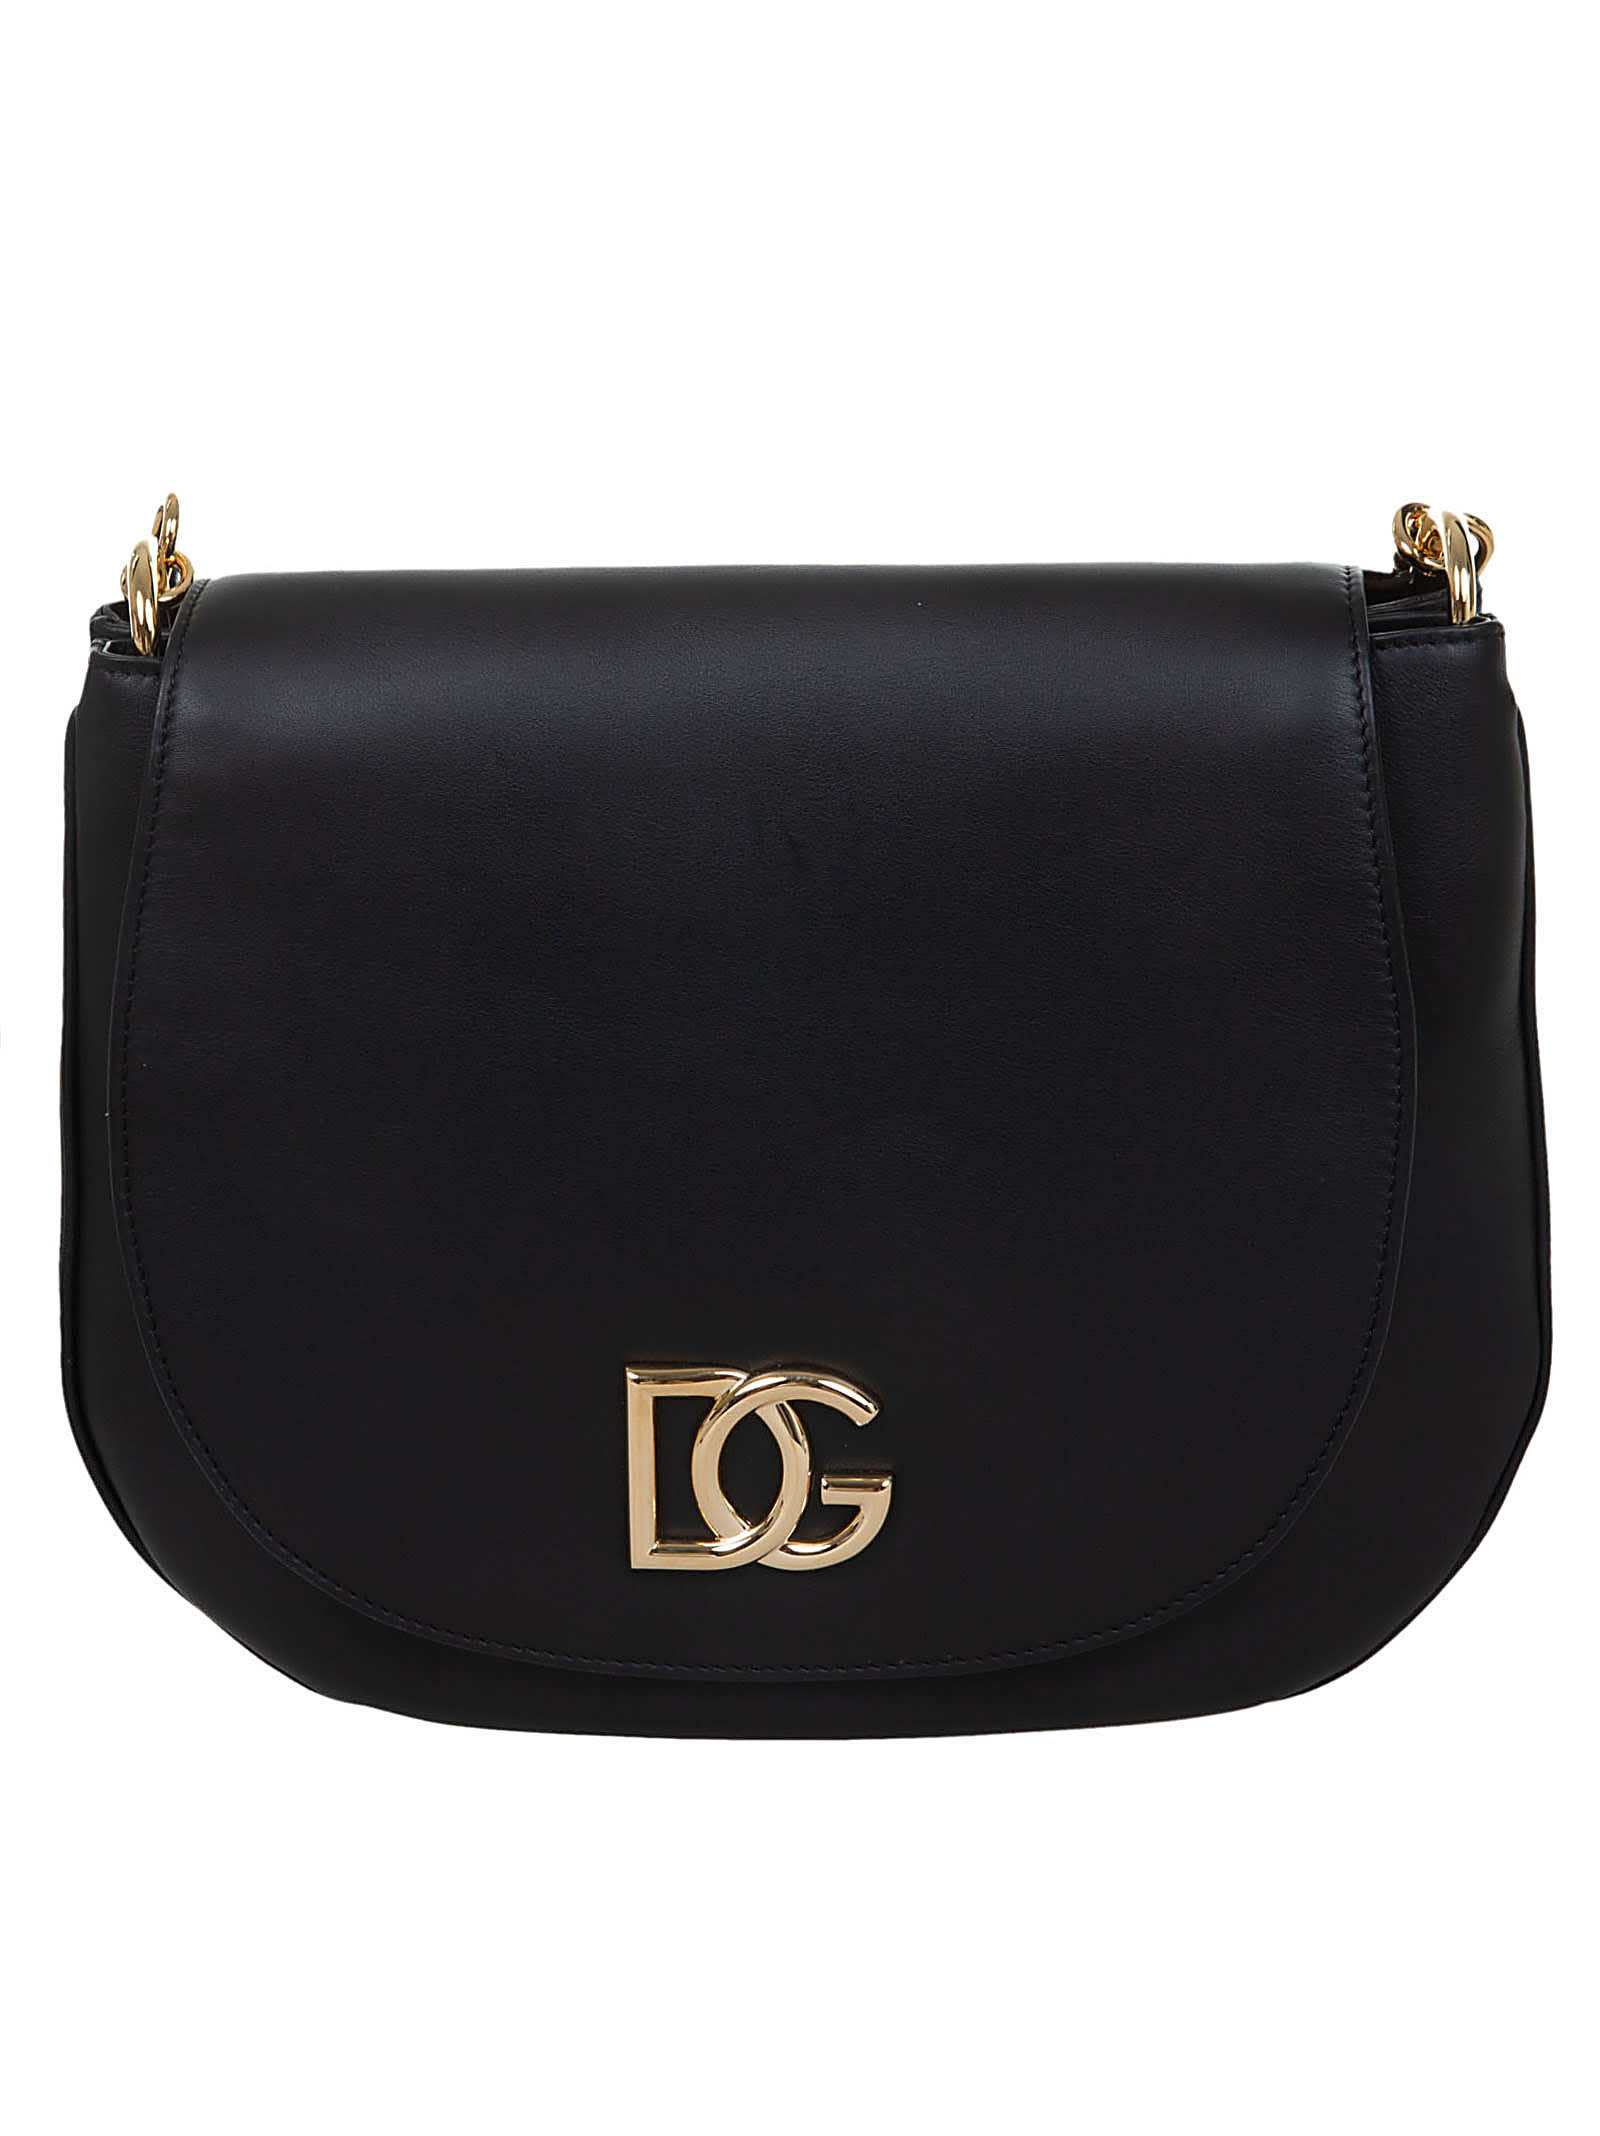 Dolce & Gabbana Logo Plaque Flap Shoulder Bag In Black